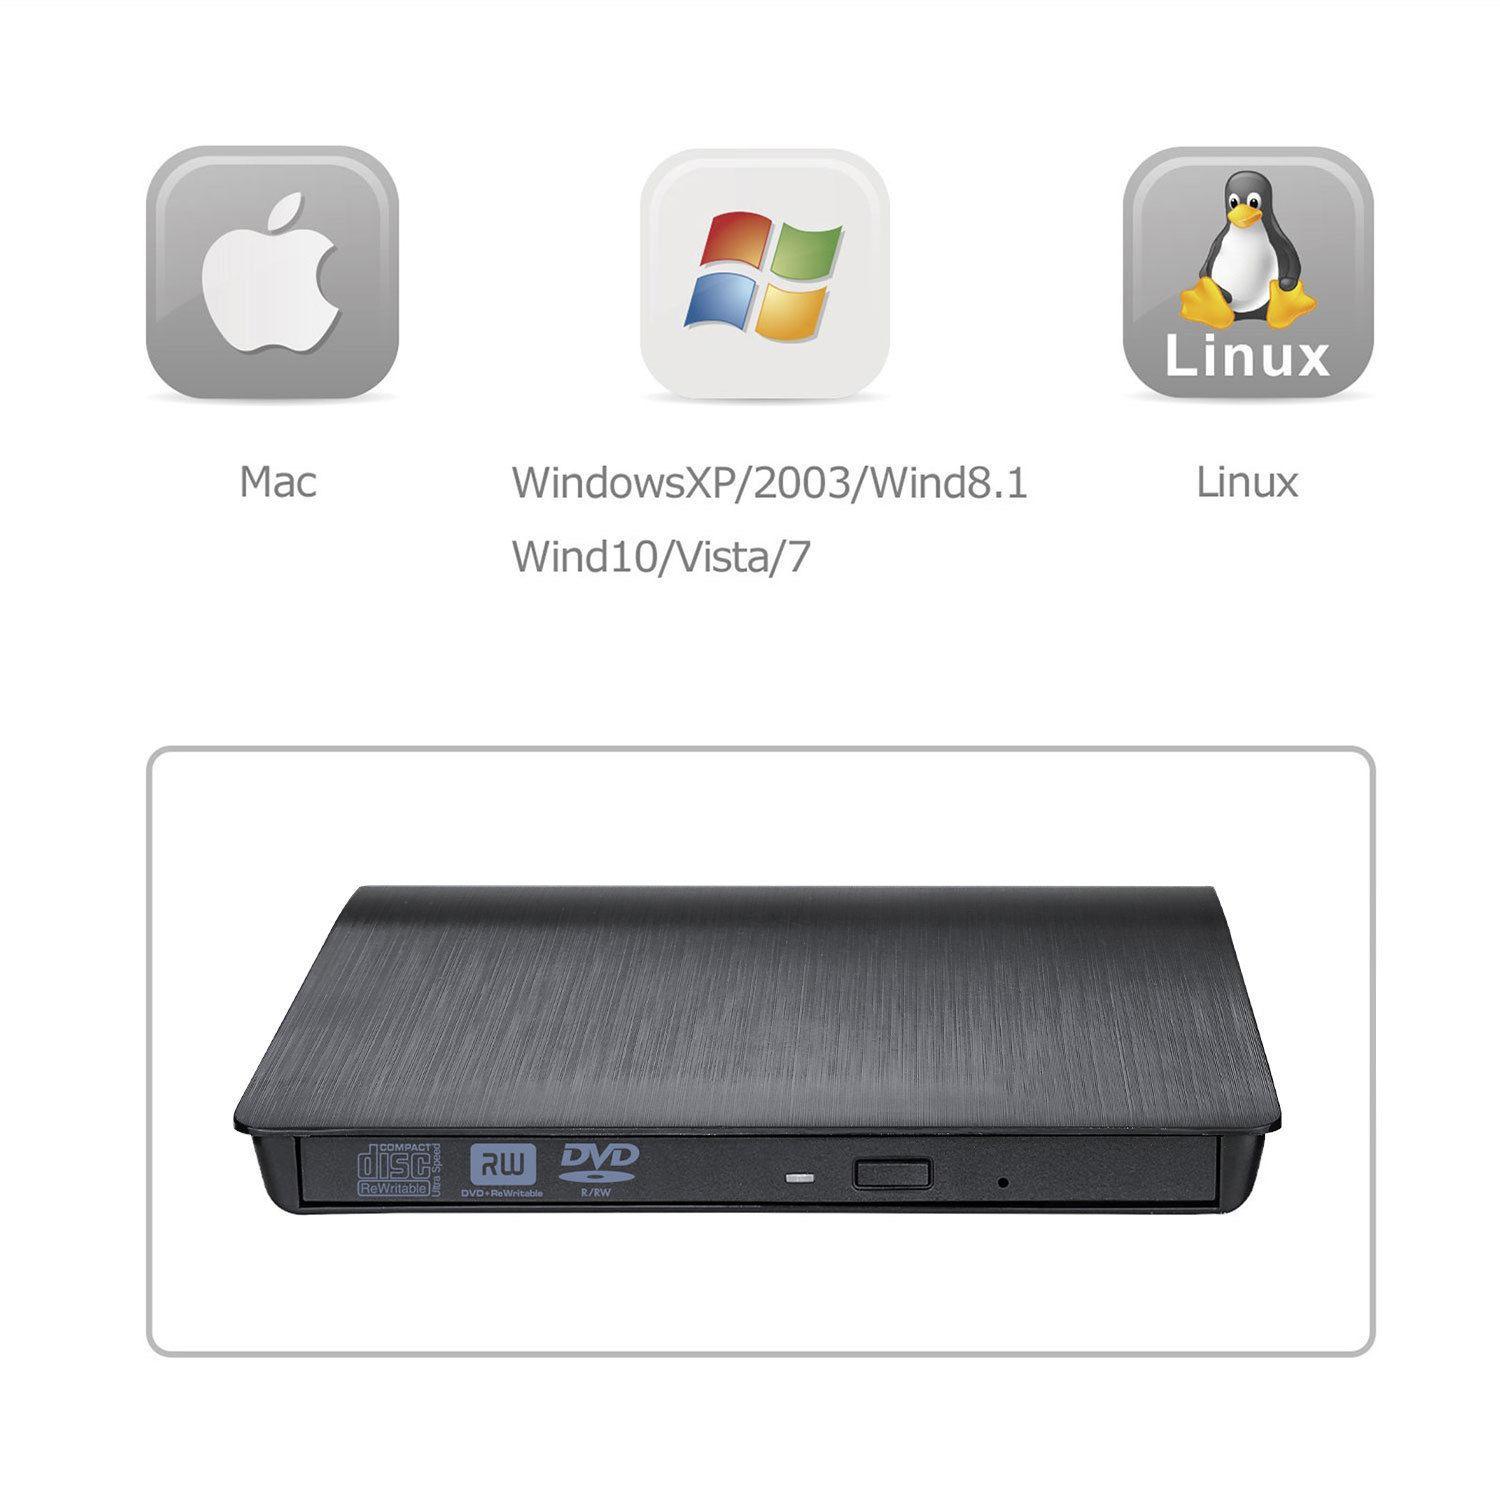 Ổ đĩa dvd rw gắn ngoài qua cổng usb 3.0 dùng cho laptop, desktop, máy tính bàn hỗ trợ đọc ghi đĩa dvd, cd tốc độ cao không kén đĩa.